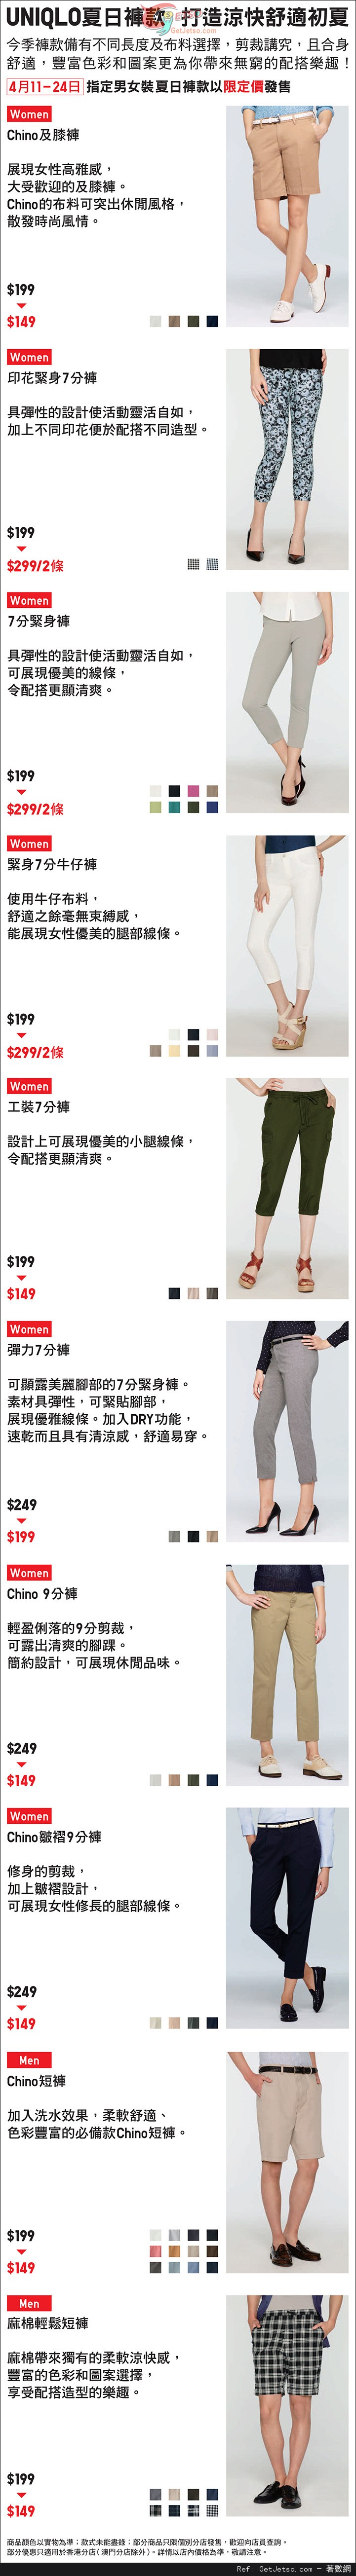 UNIQLO 指定男女裝夏日褲款限定價購買優惠(至14年4月24日)圖片1